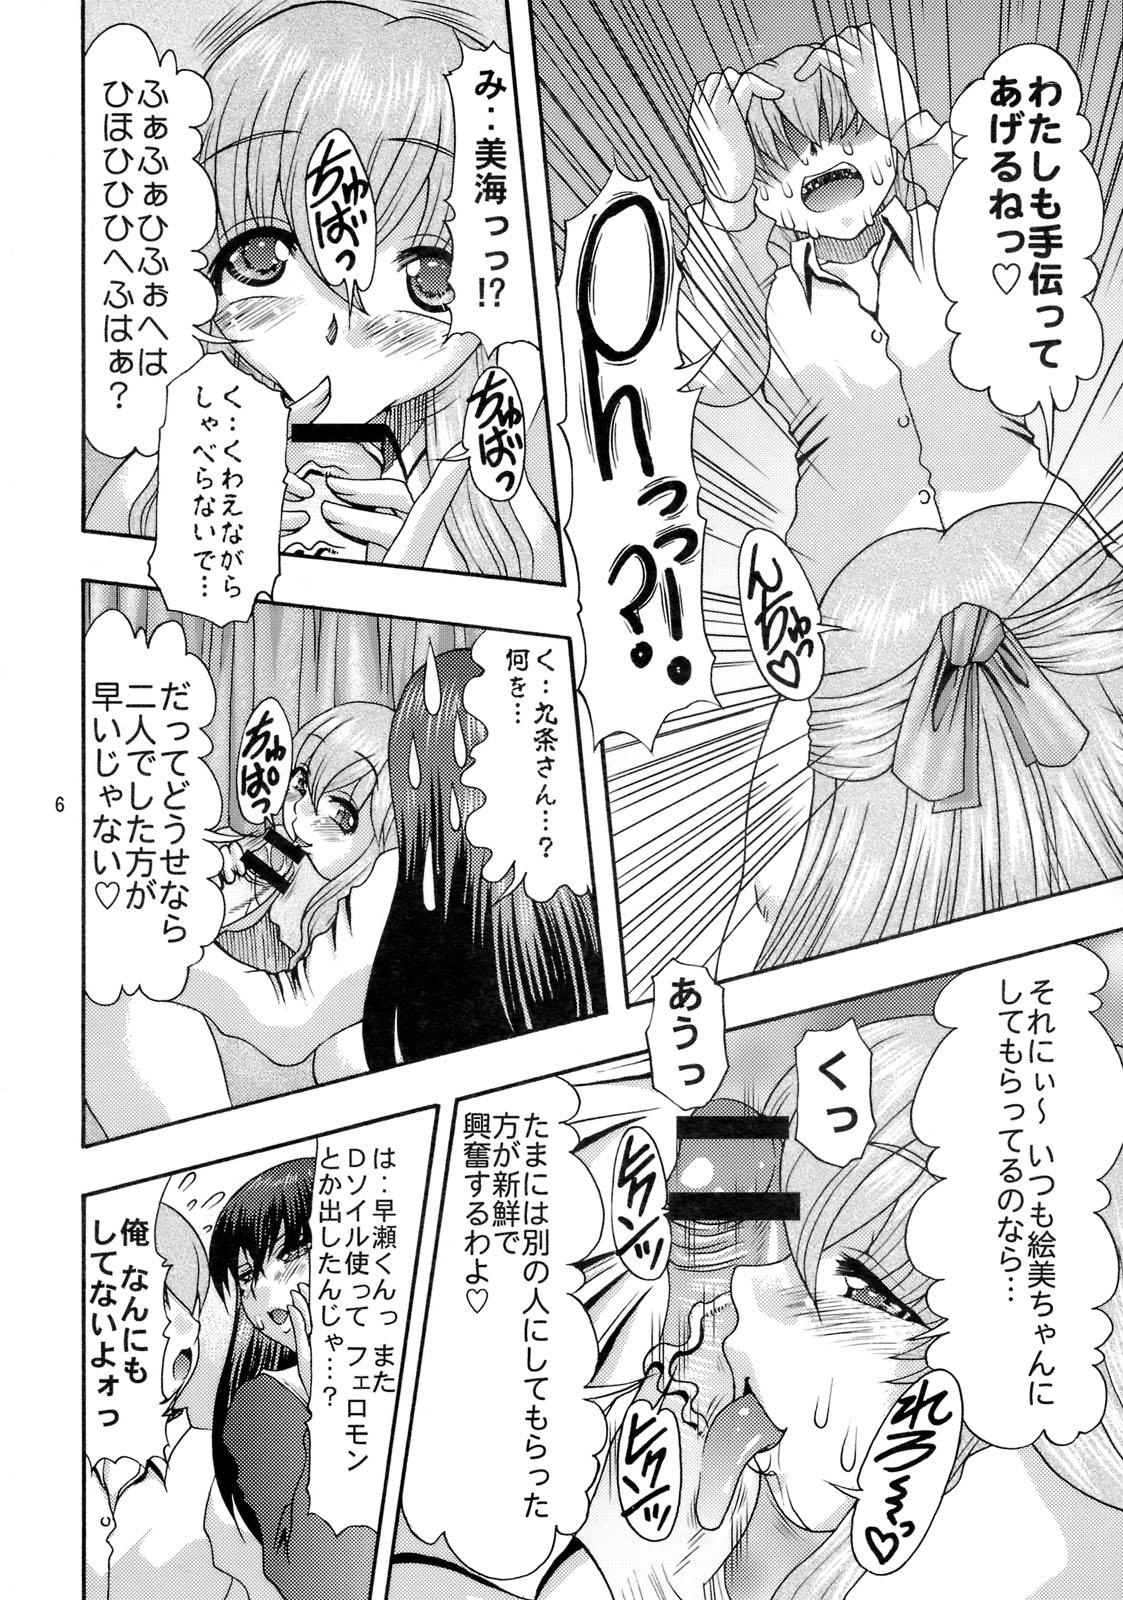 Ass Worship Nikuyoku no Linebarrel II - Kurogane no linebarrels Trans - Page 5